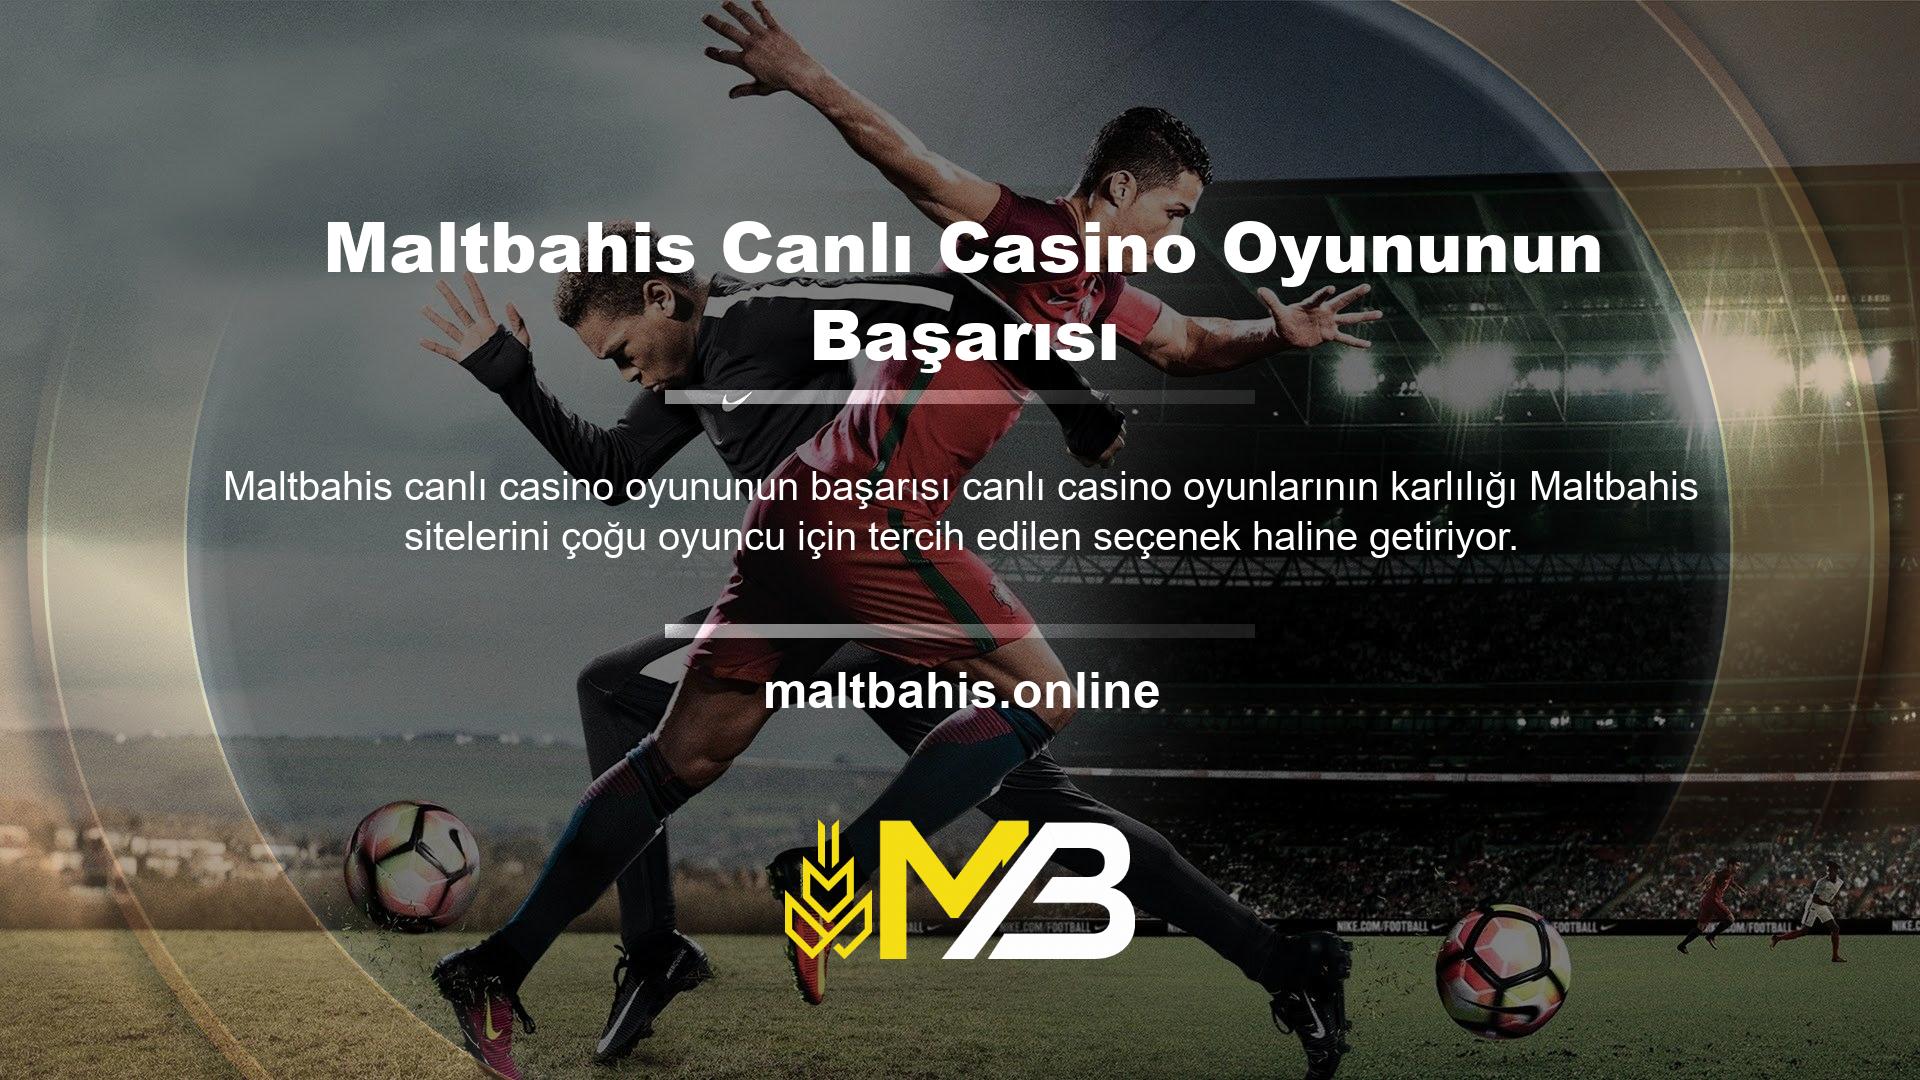 Maltbahis canlı casino sitesinde oyun oynayarak para kazanmaya başlayın